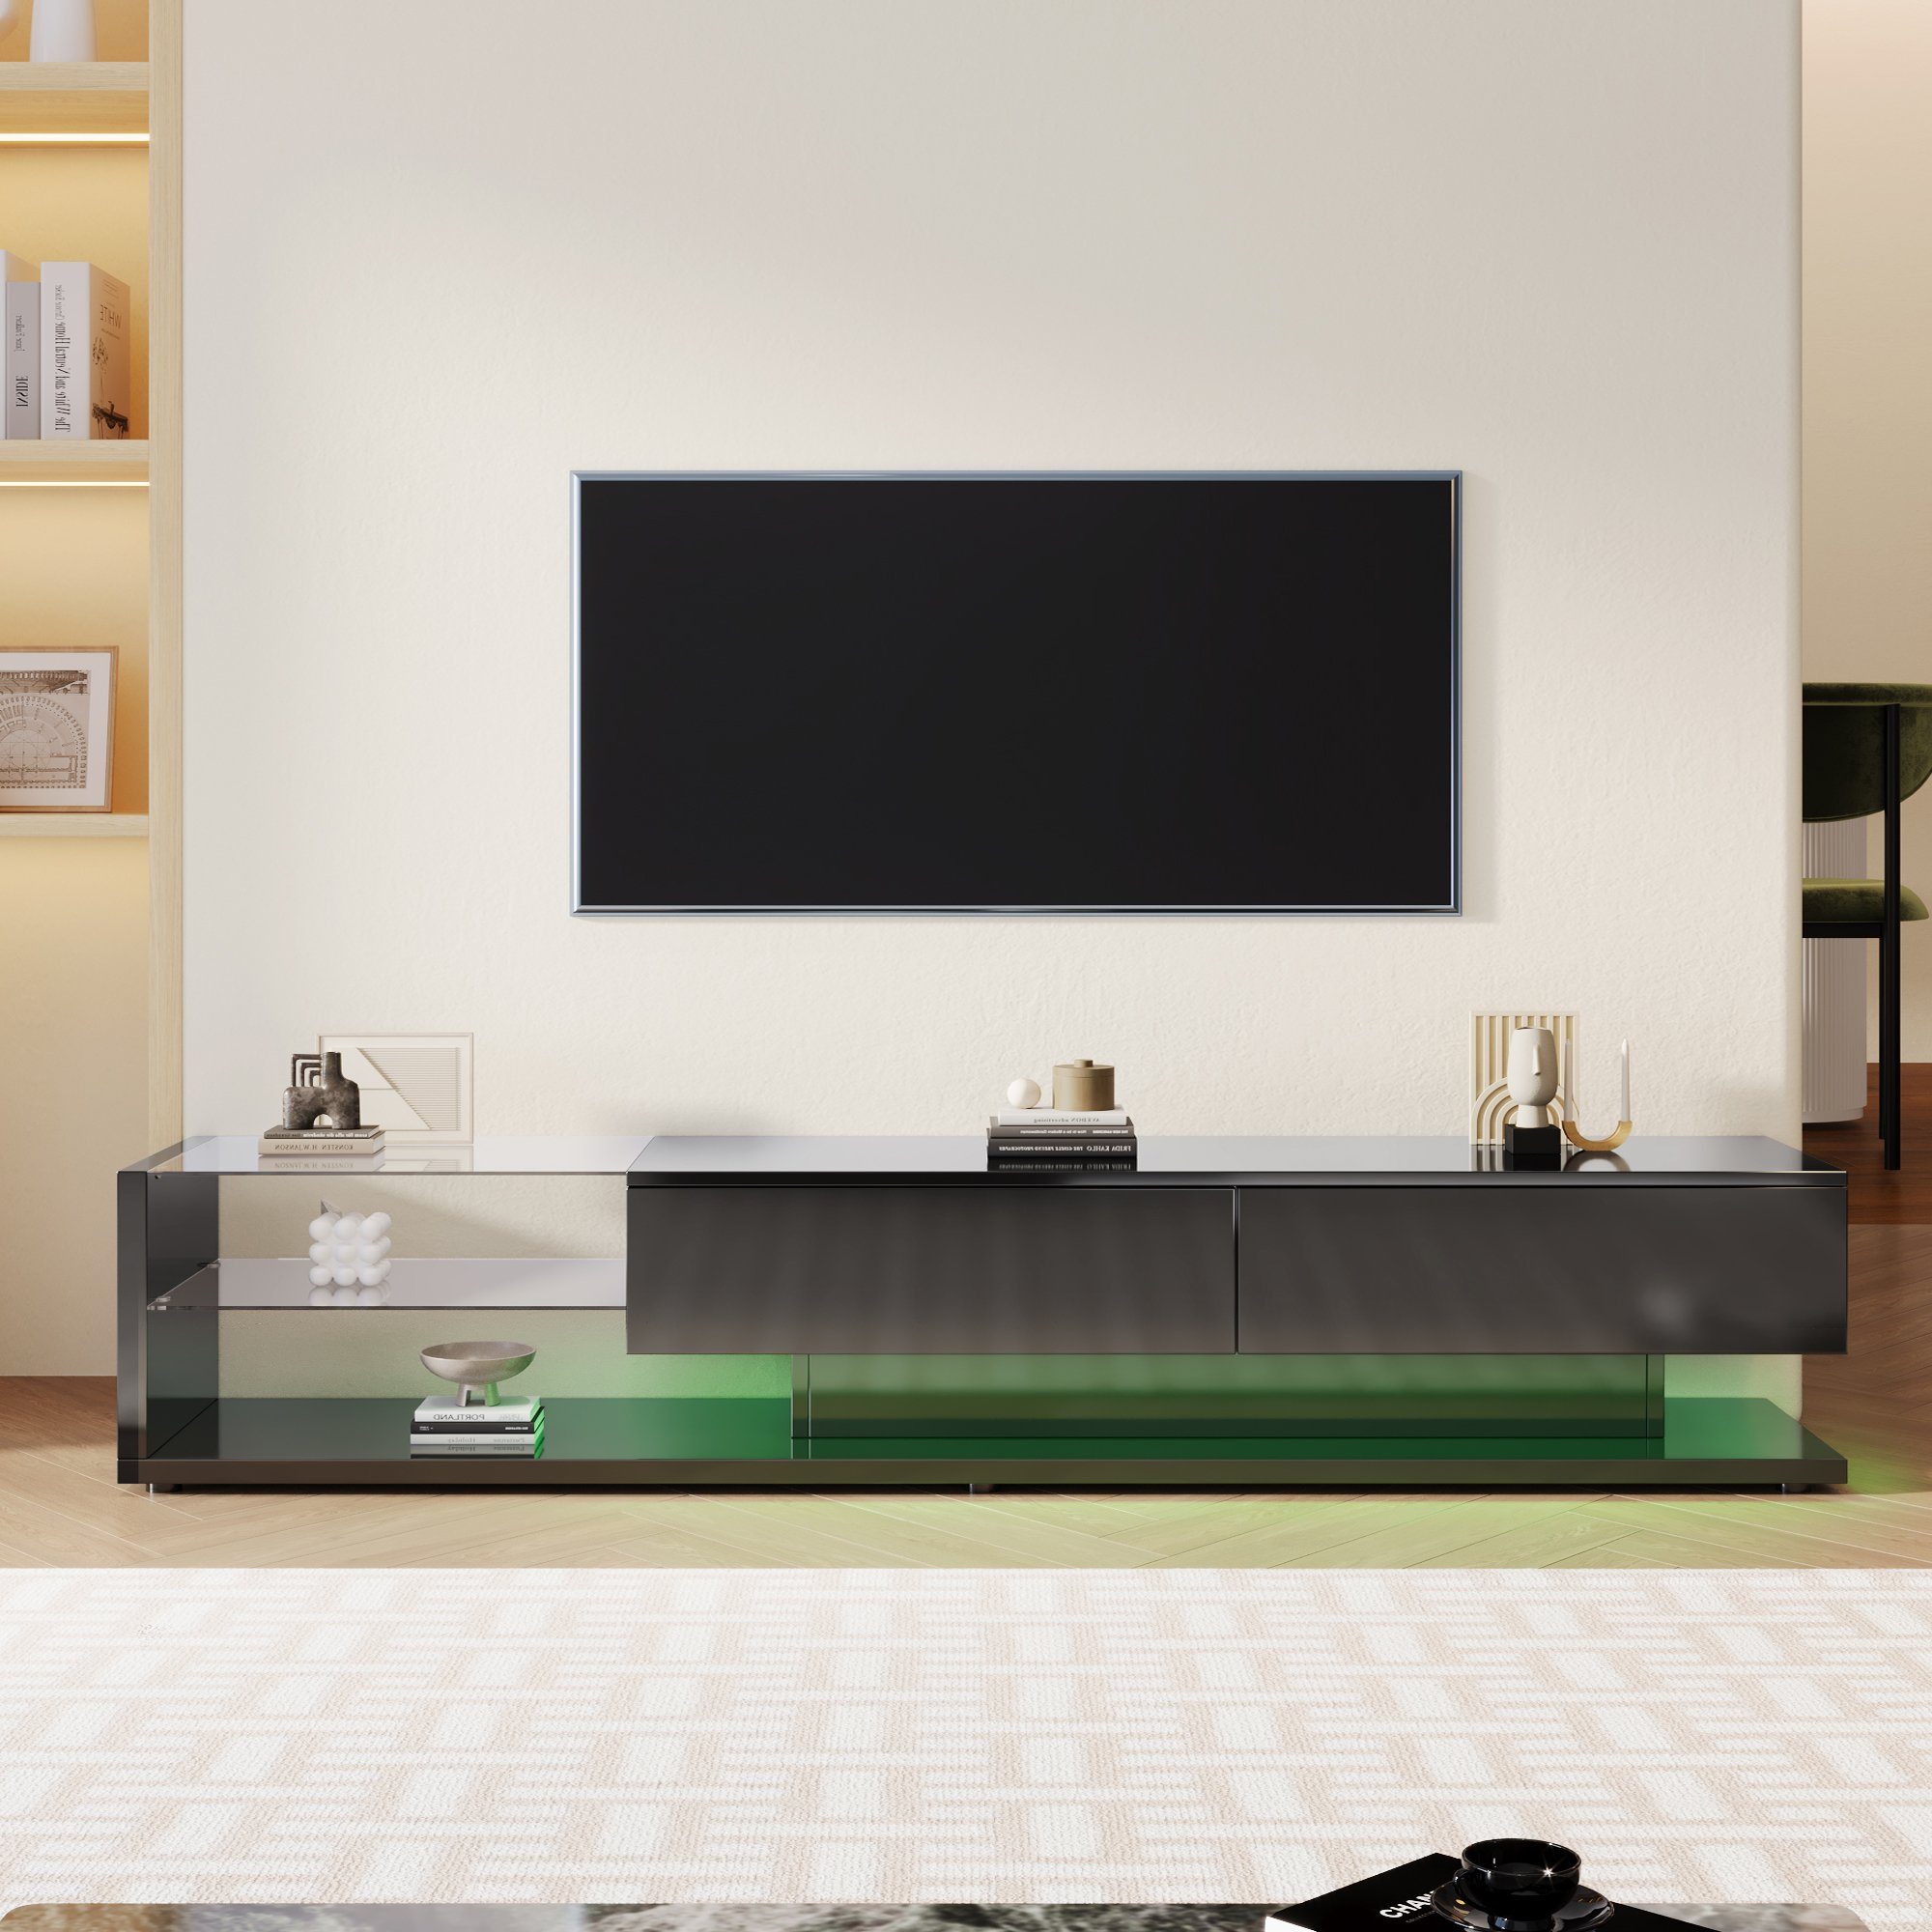 Ulife Lowboard TV-Schrank hochglänzend mit LED,TV-Board, TV-Ständer, Lowboard mit Glasablagen und Schubladen, Hochglanz-Wohnzimmermöbel